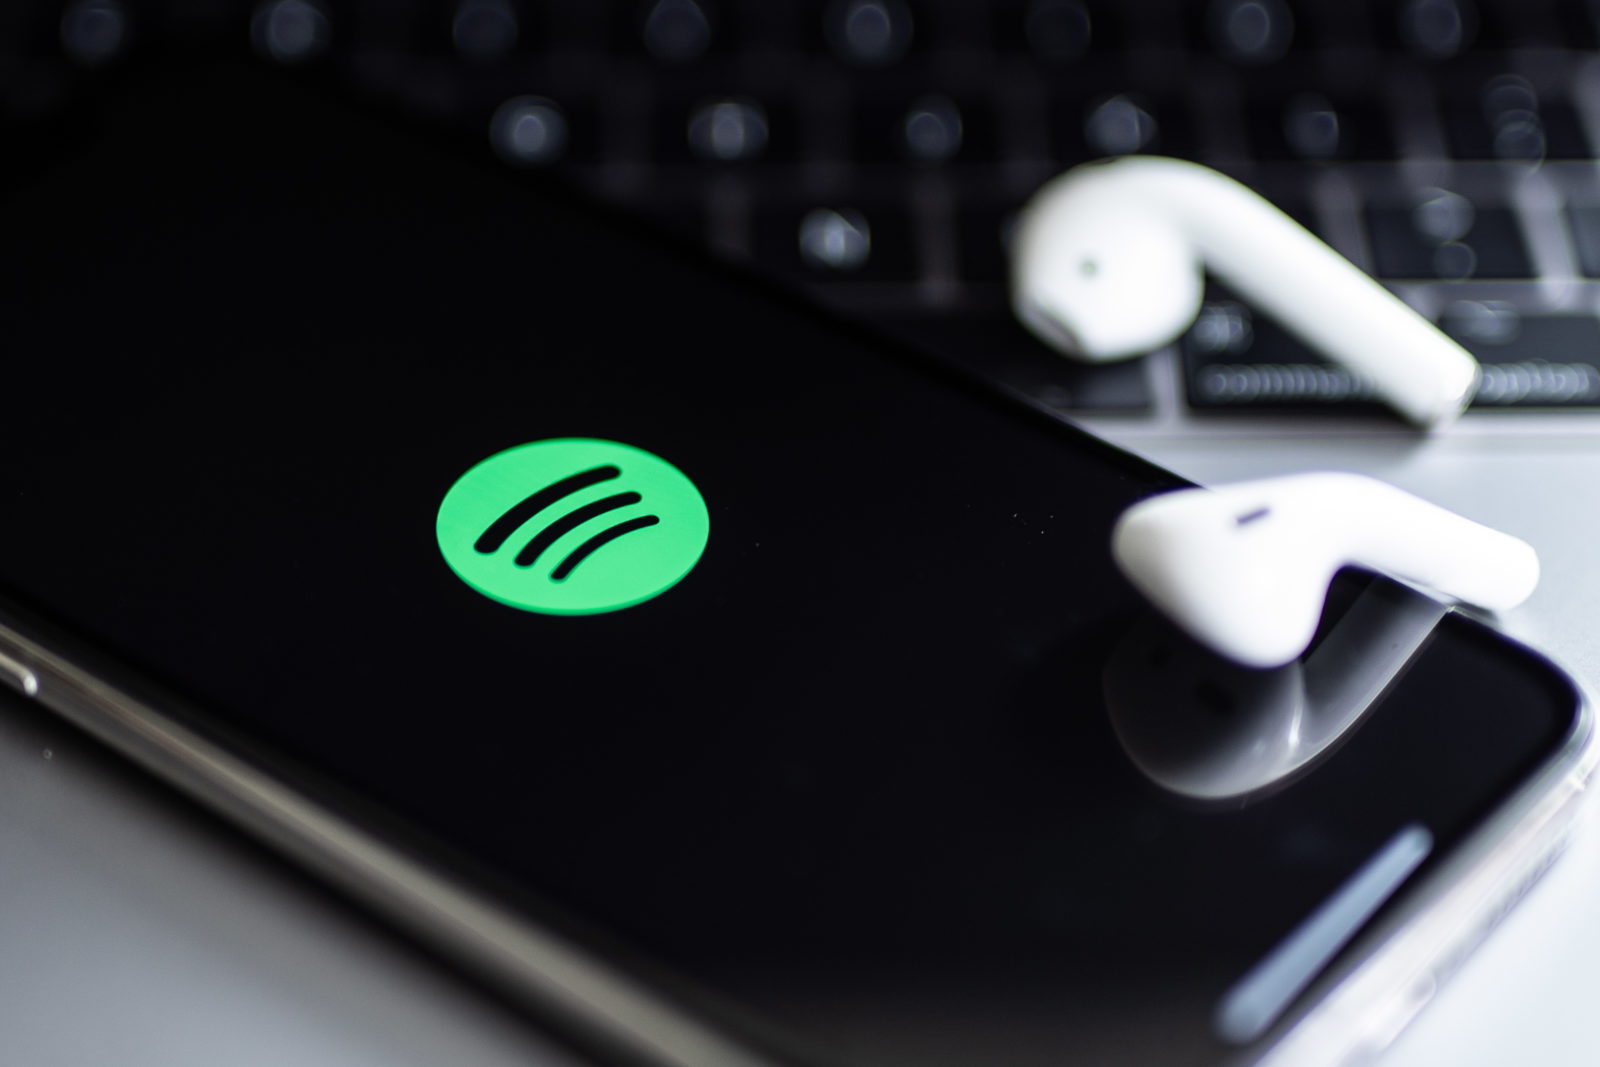 De veelbesproken Spotify feature die voorlopig op zich laat wachten